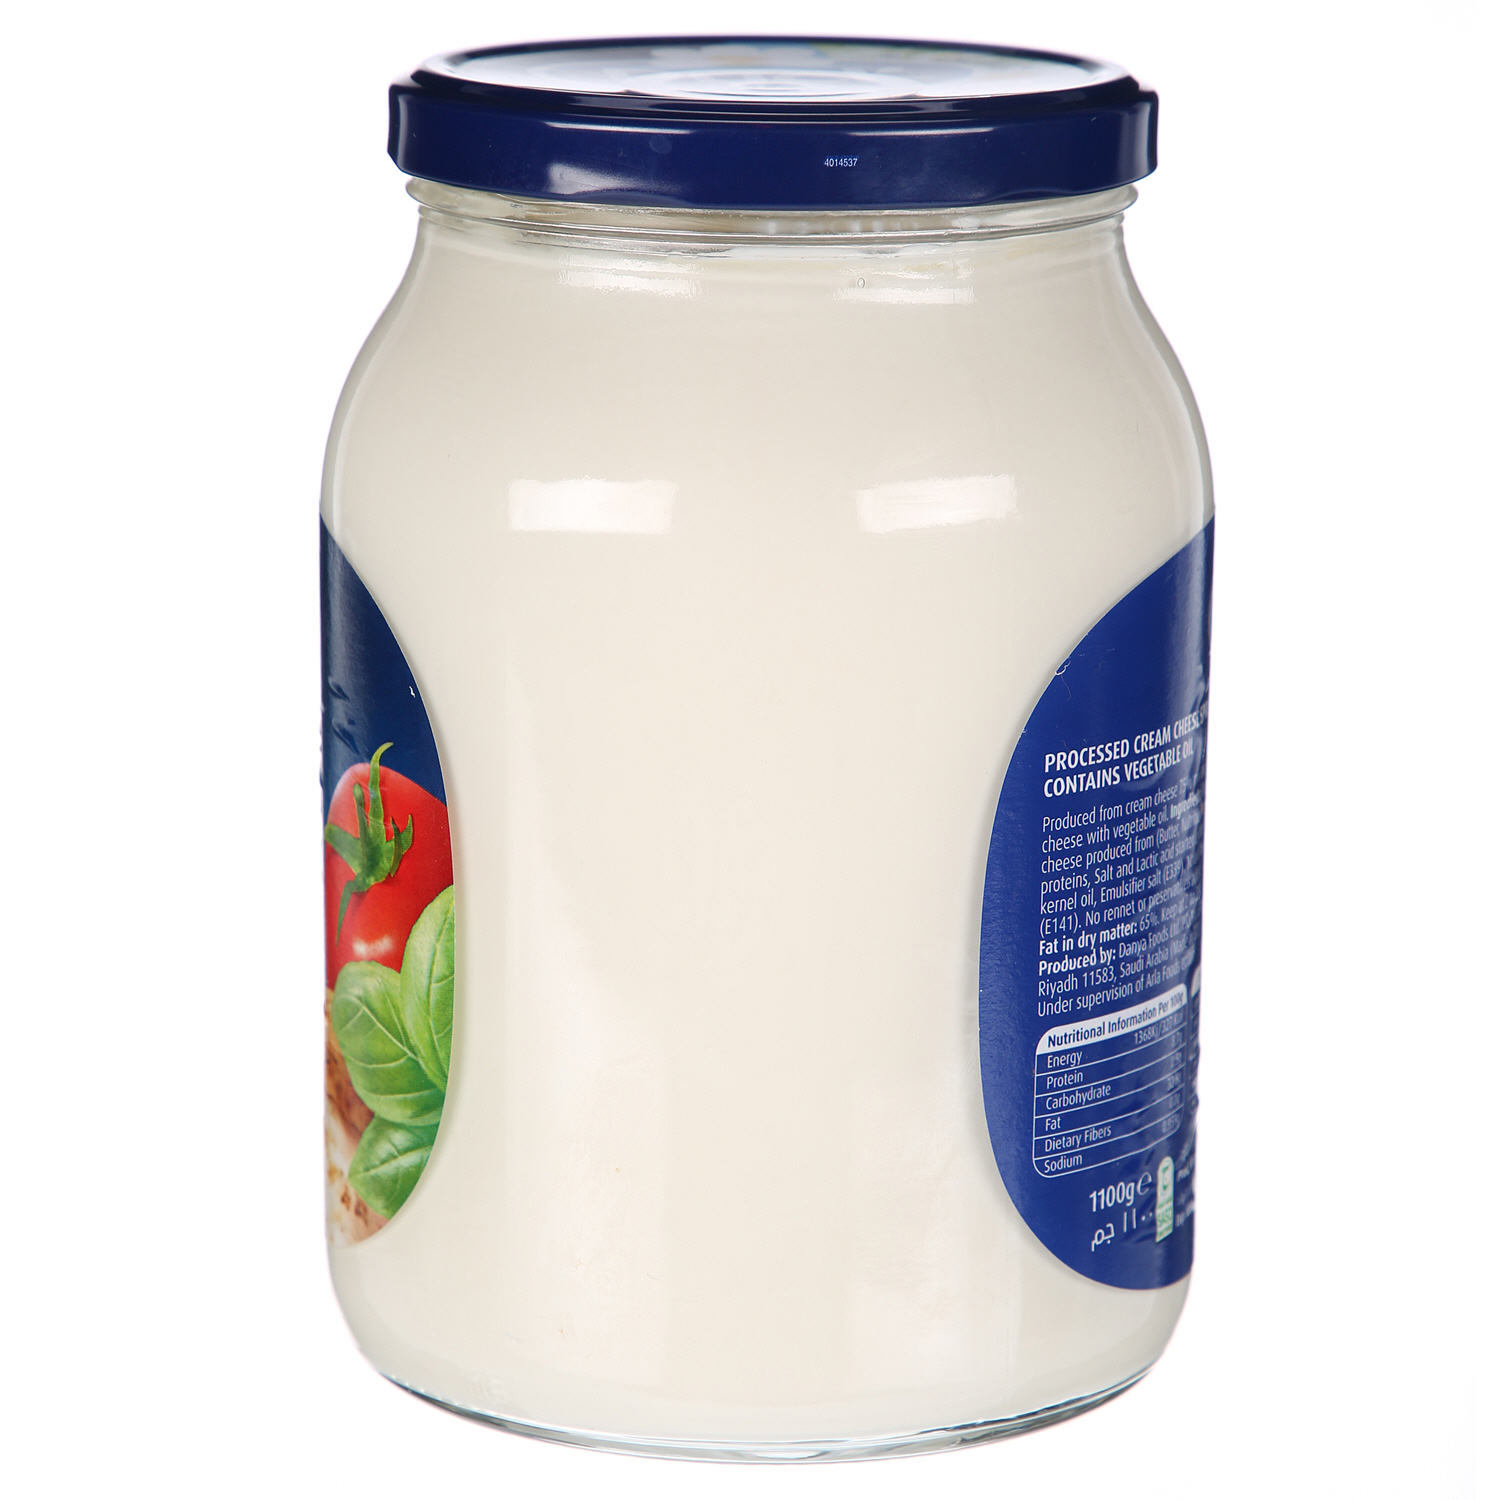 Puck Cheese Jar White 1.1Kg